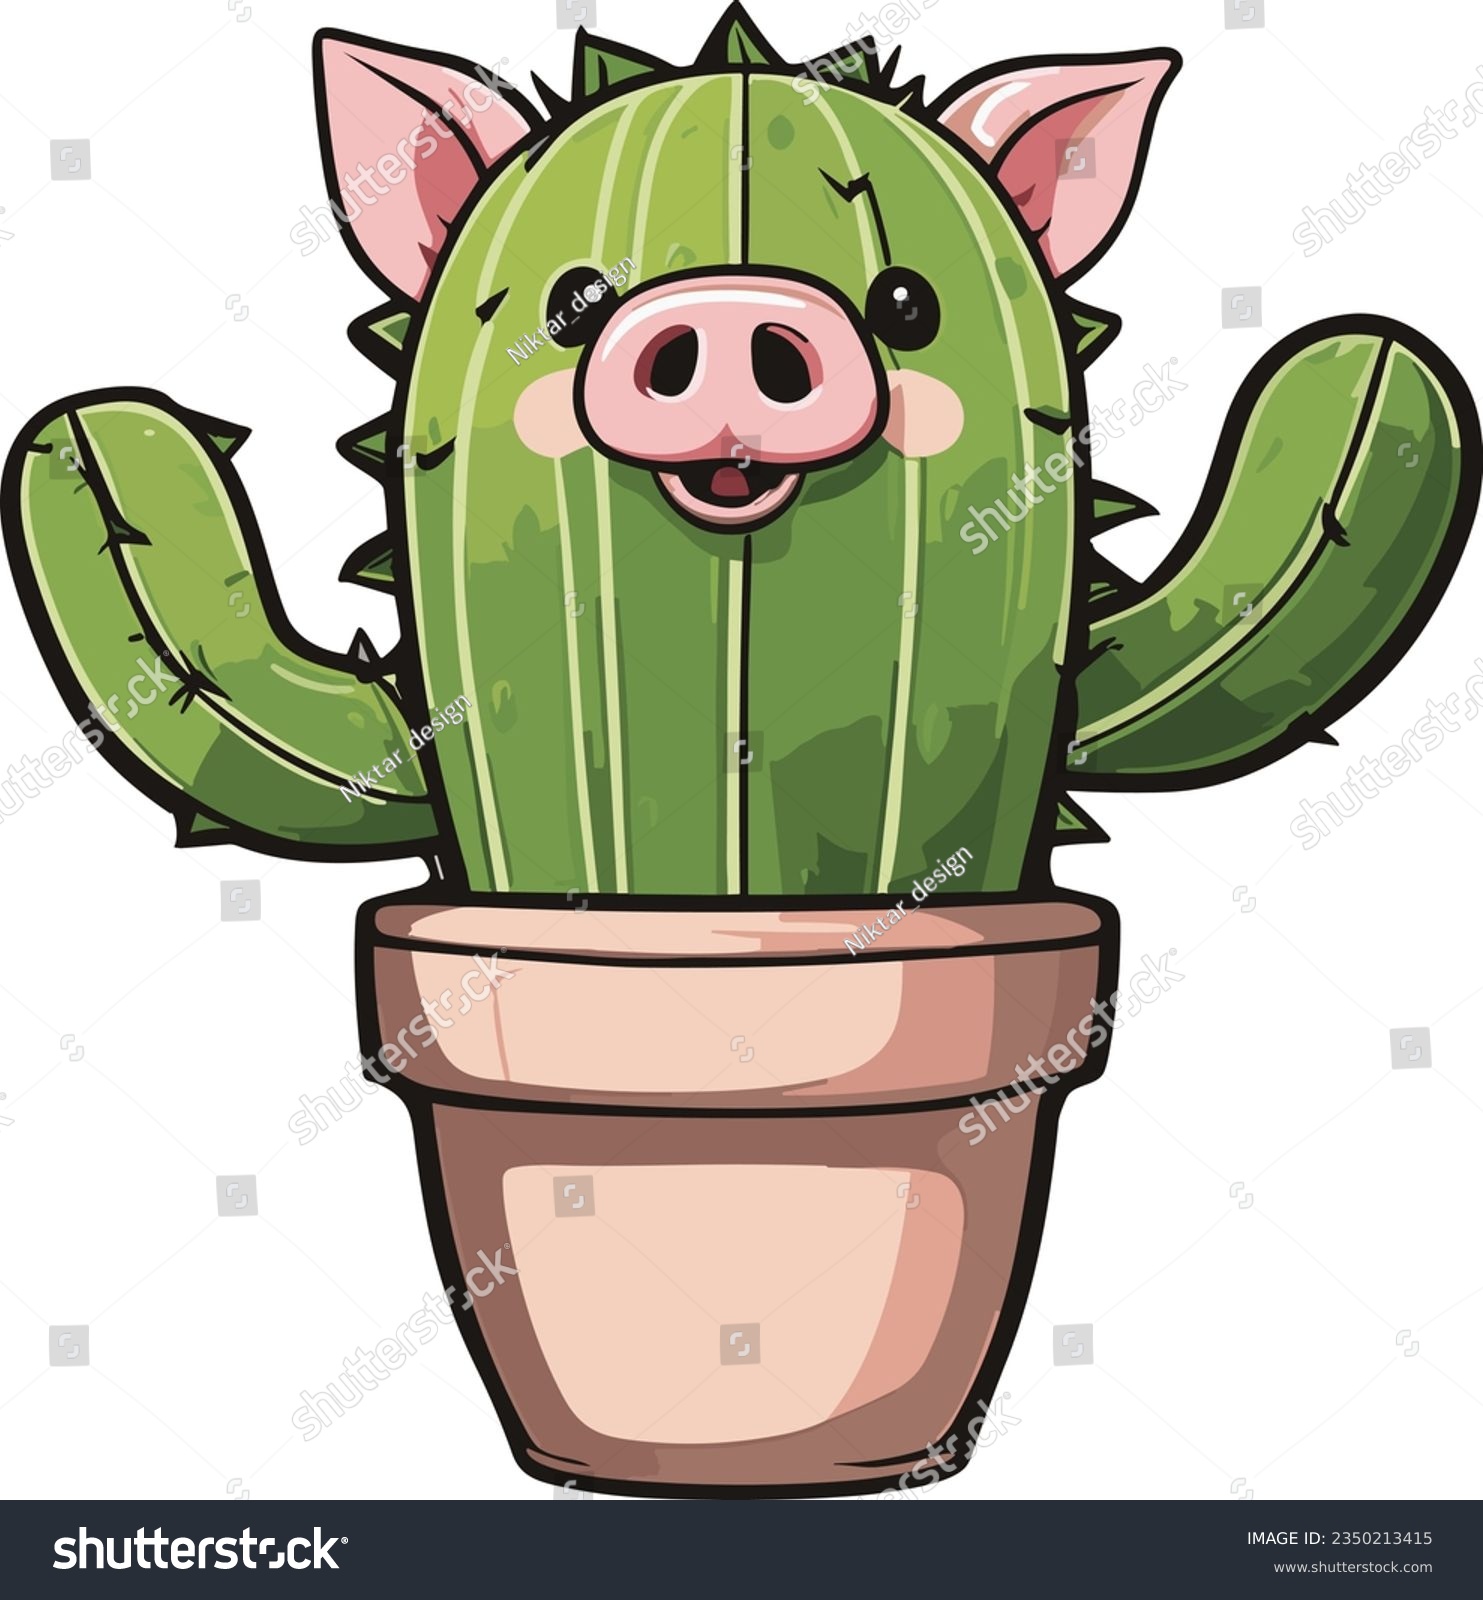 SVG of Green Pig Cactus art illustration svg